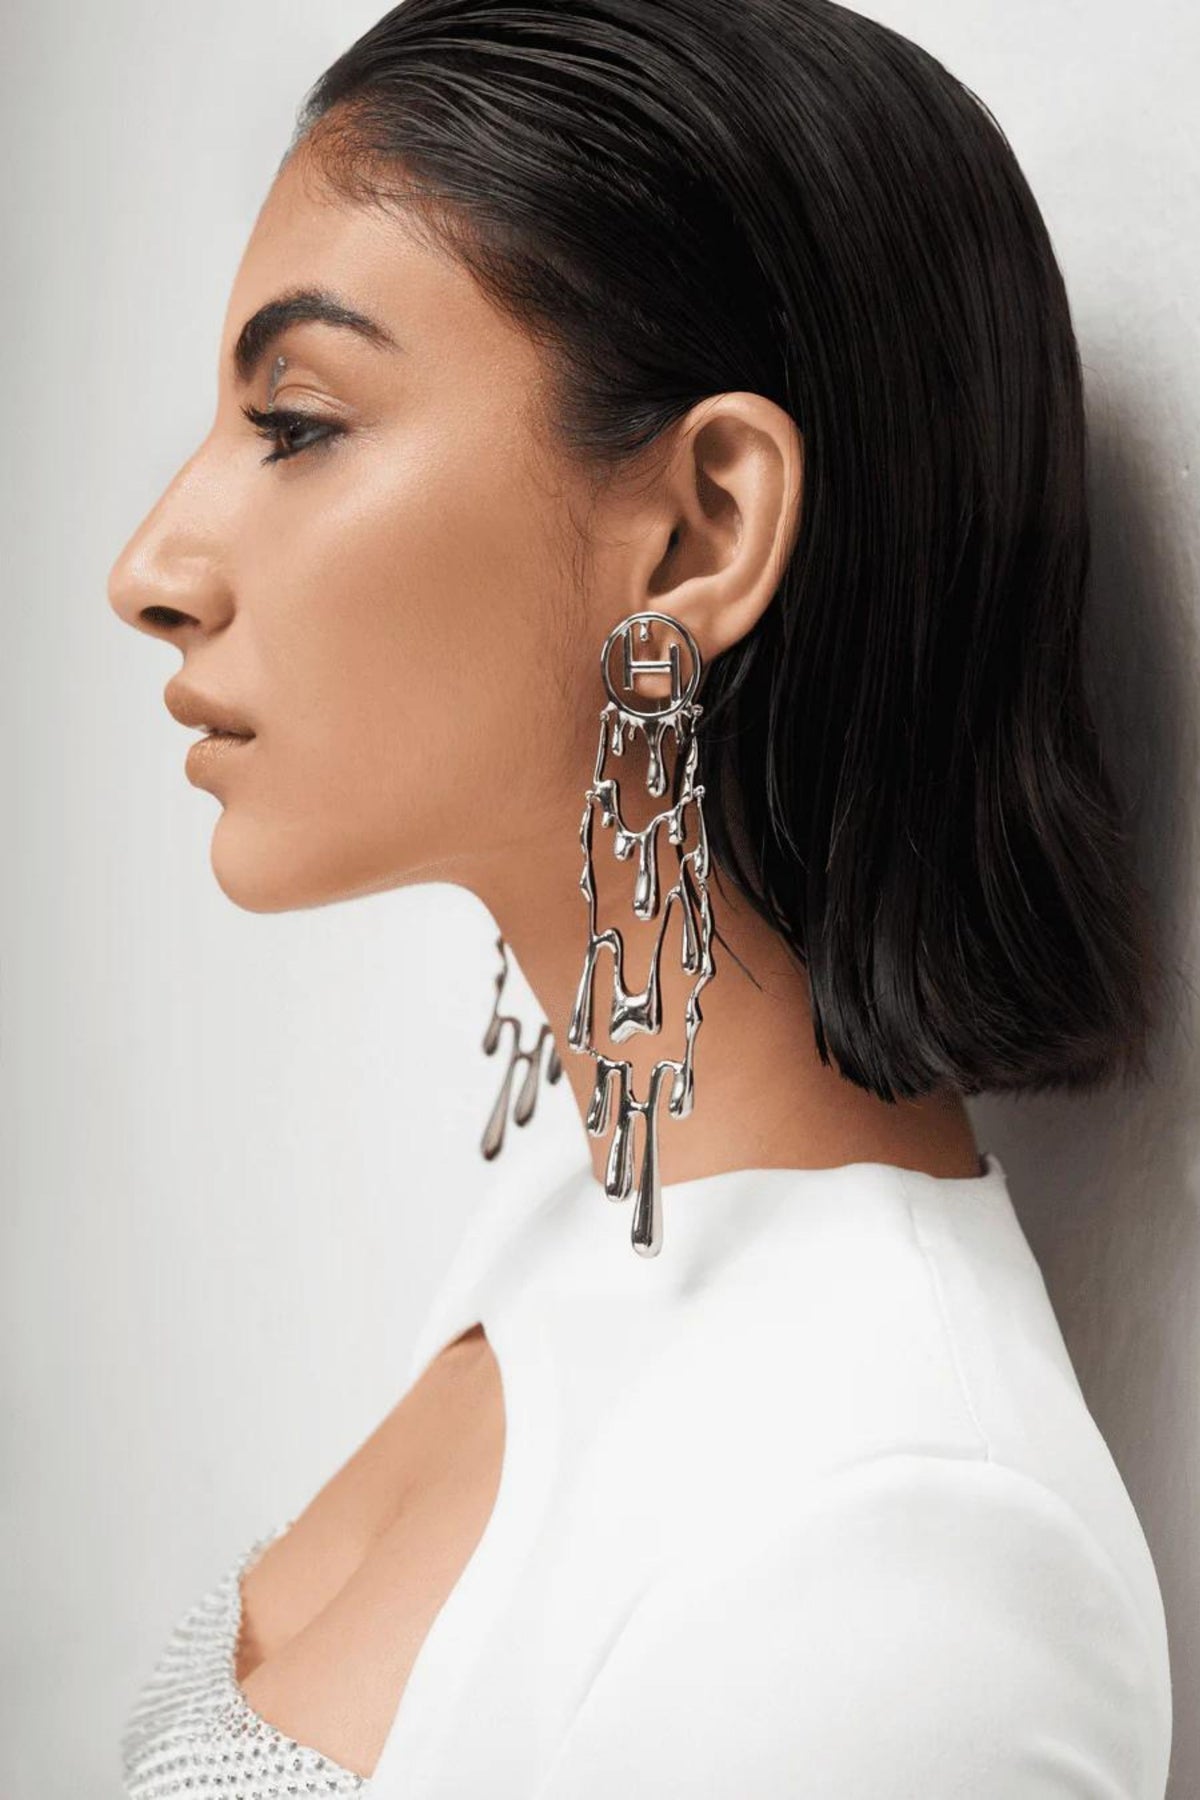 Free Fall Earrings in Silver